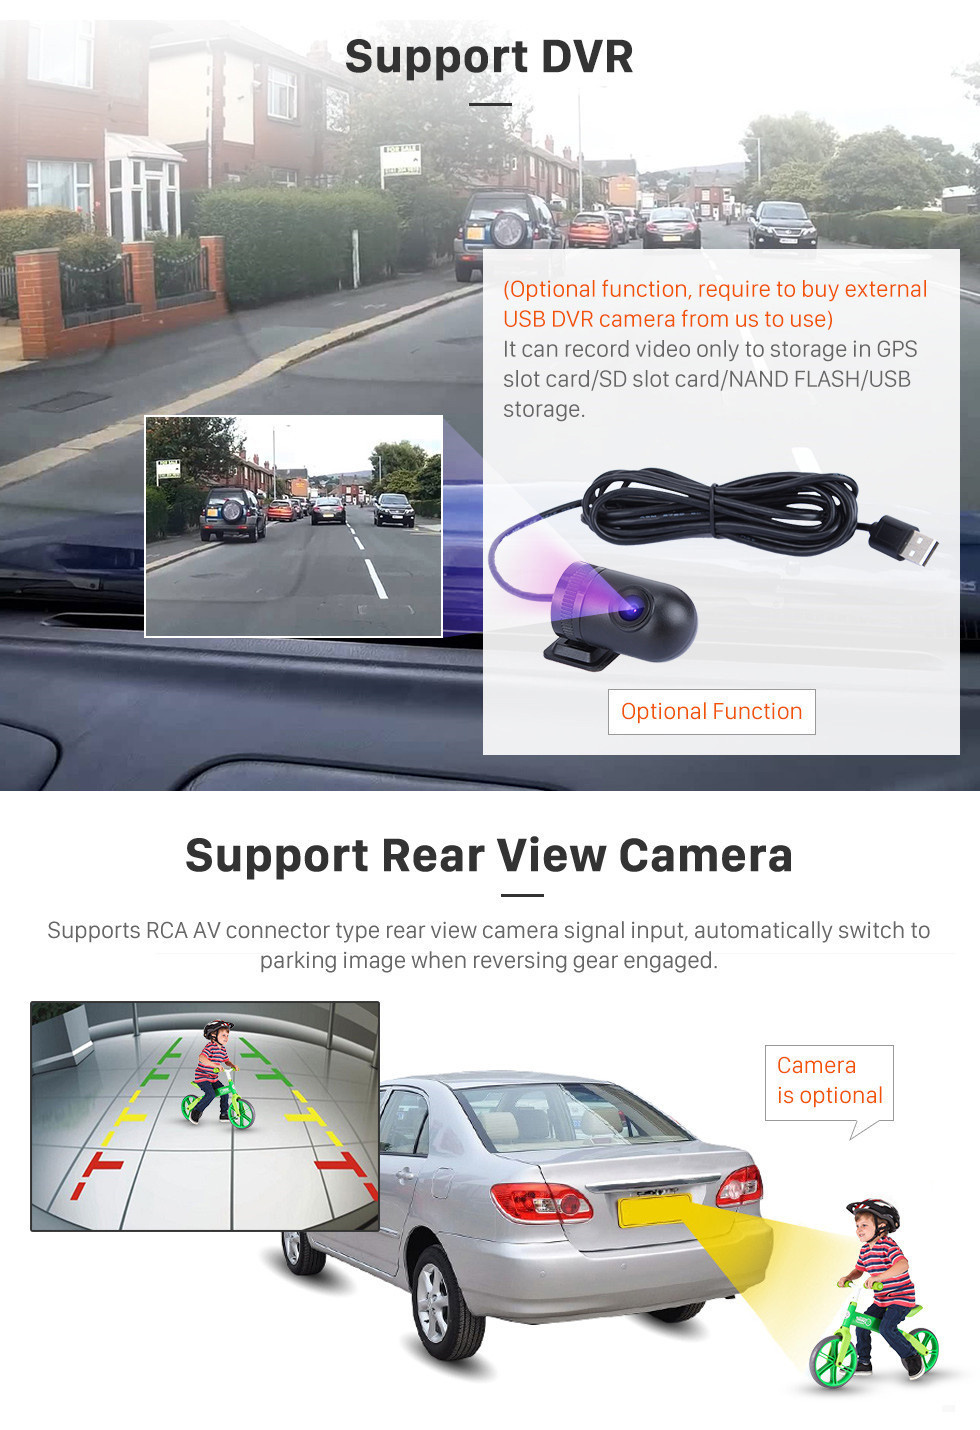 Seicane 9 pouces Android 11.0 Radio de navigation GPS pour 2013 Honda Jade avec écran tactile HD Carplay AUX WIFI support Bluetooth DVR OBD2 TPMS